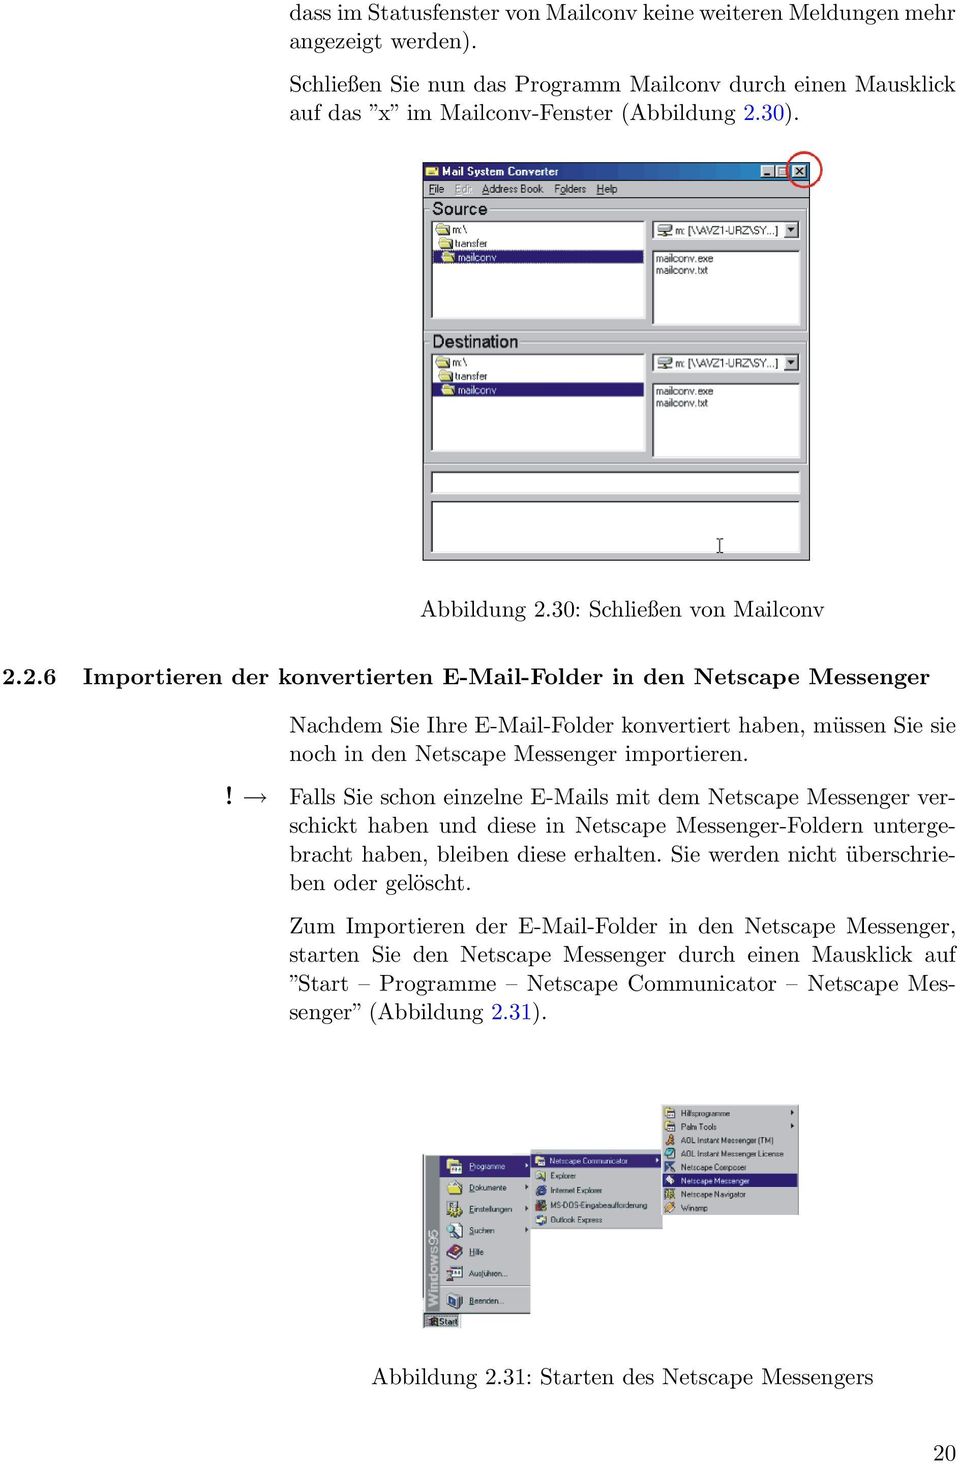 Nachdem Sie Ihre E-Mail-Folder konvertiert haben, müssen Sie sie noch in den Netscape Messenger importieren.